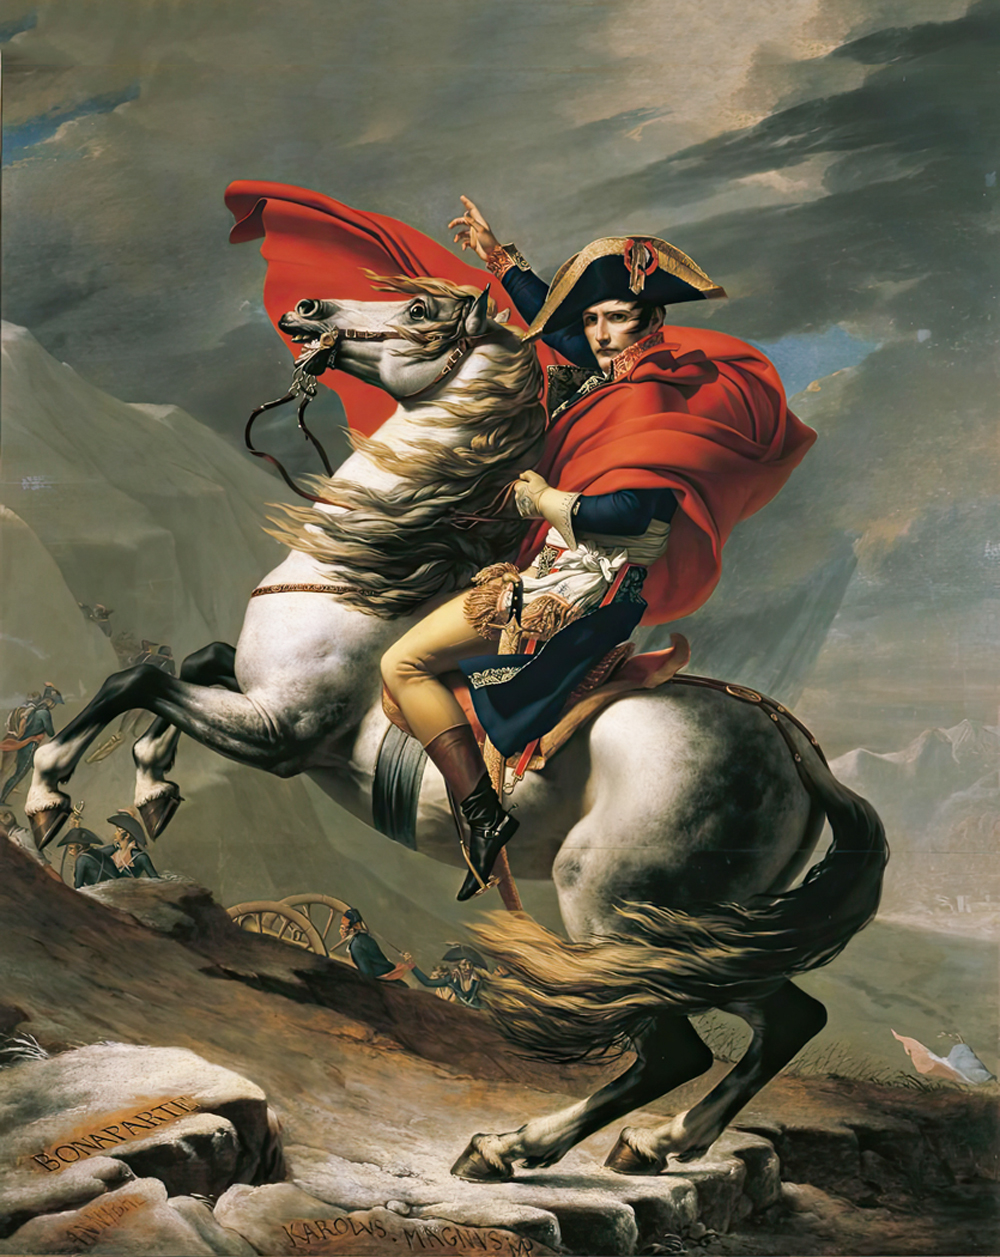 DÉSPOTA - Napoleão Bonaparte: a exemplo de Nero e Hitler, associação com Satanás